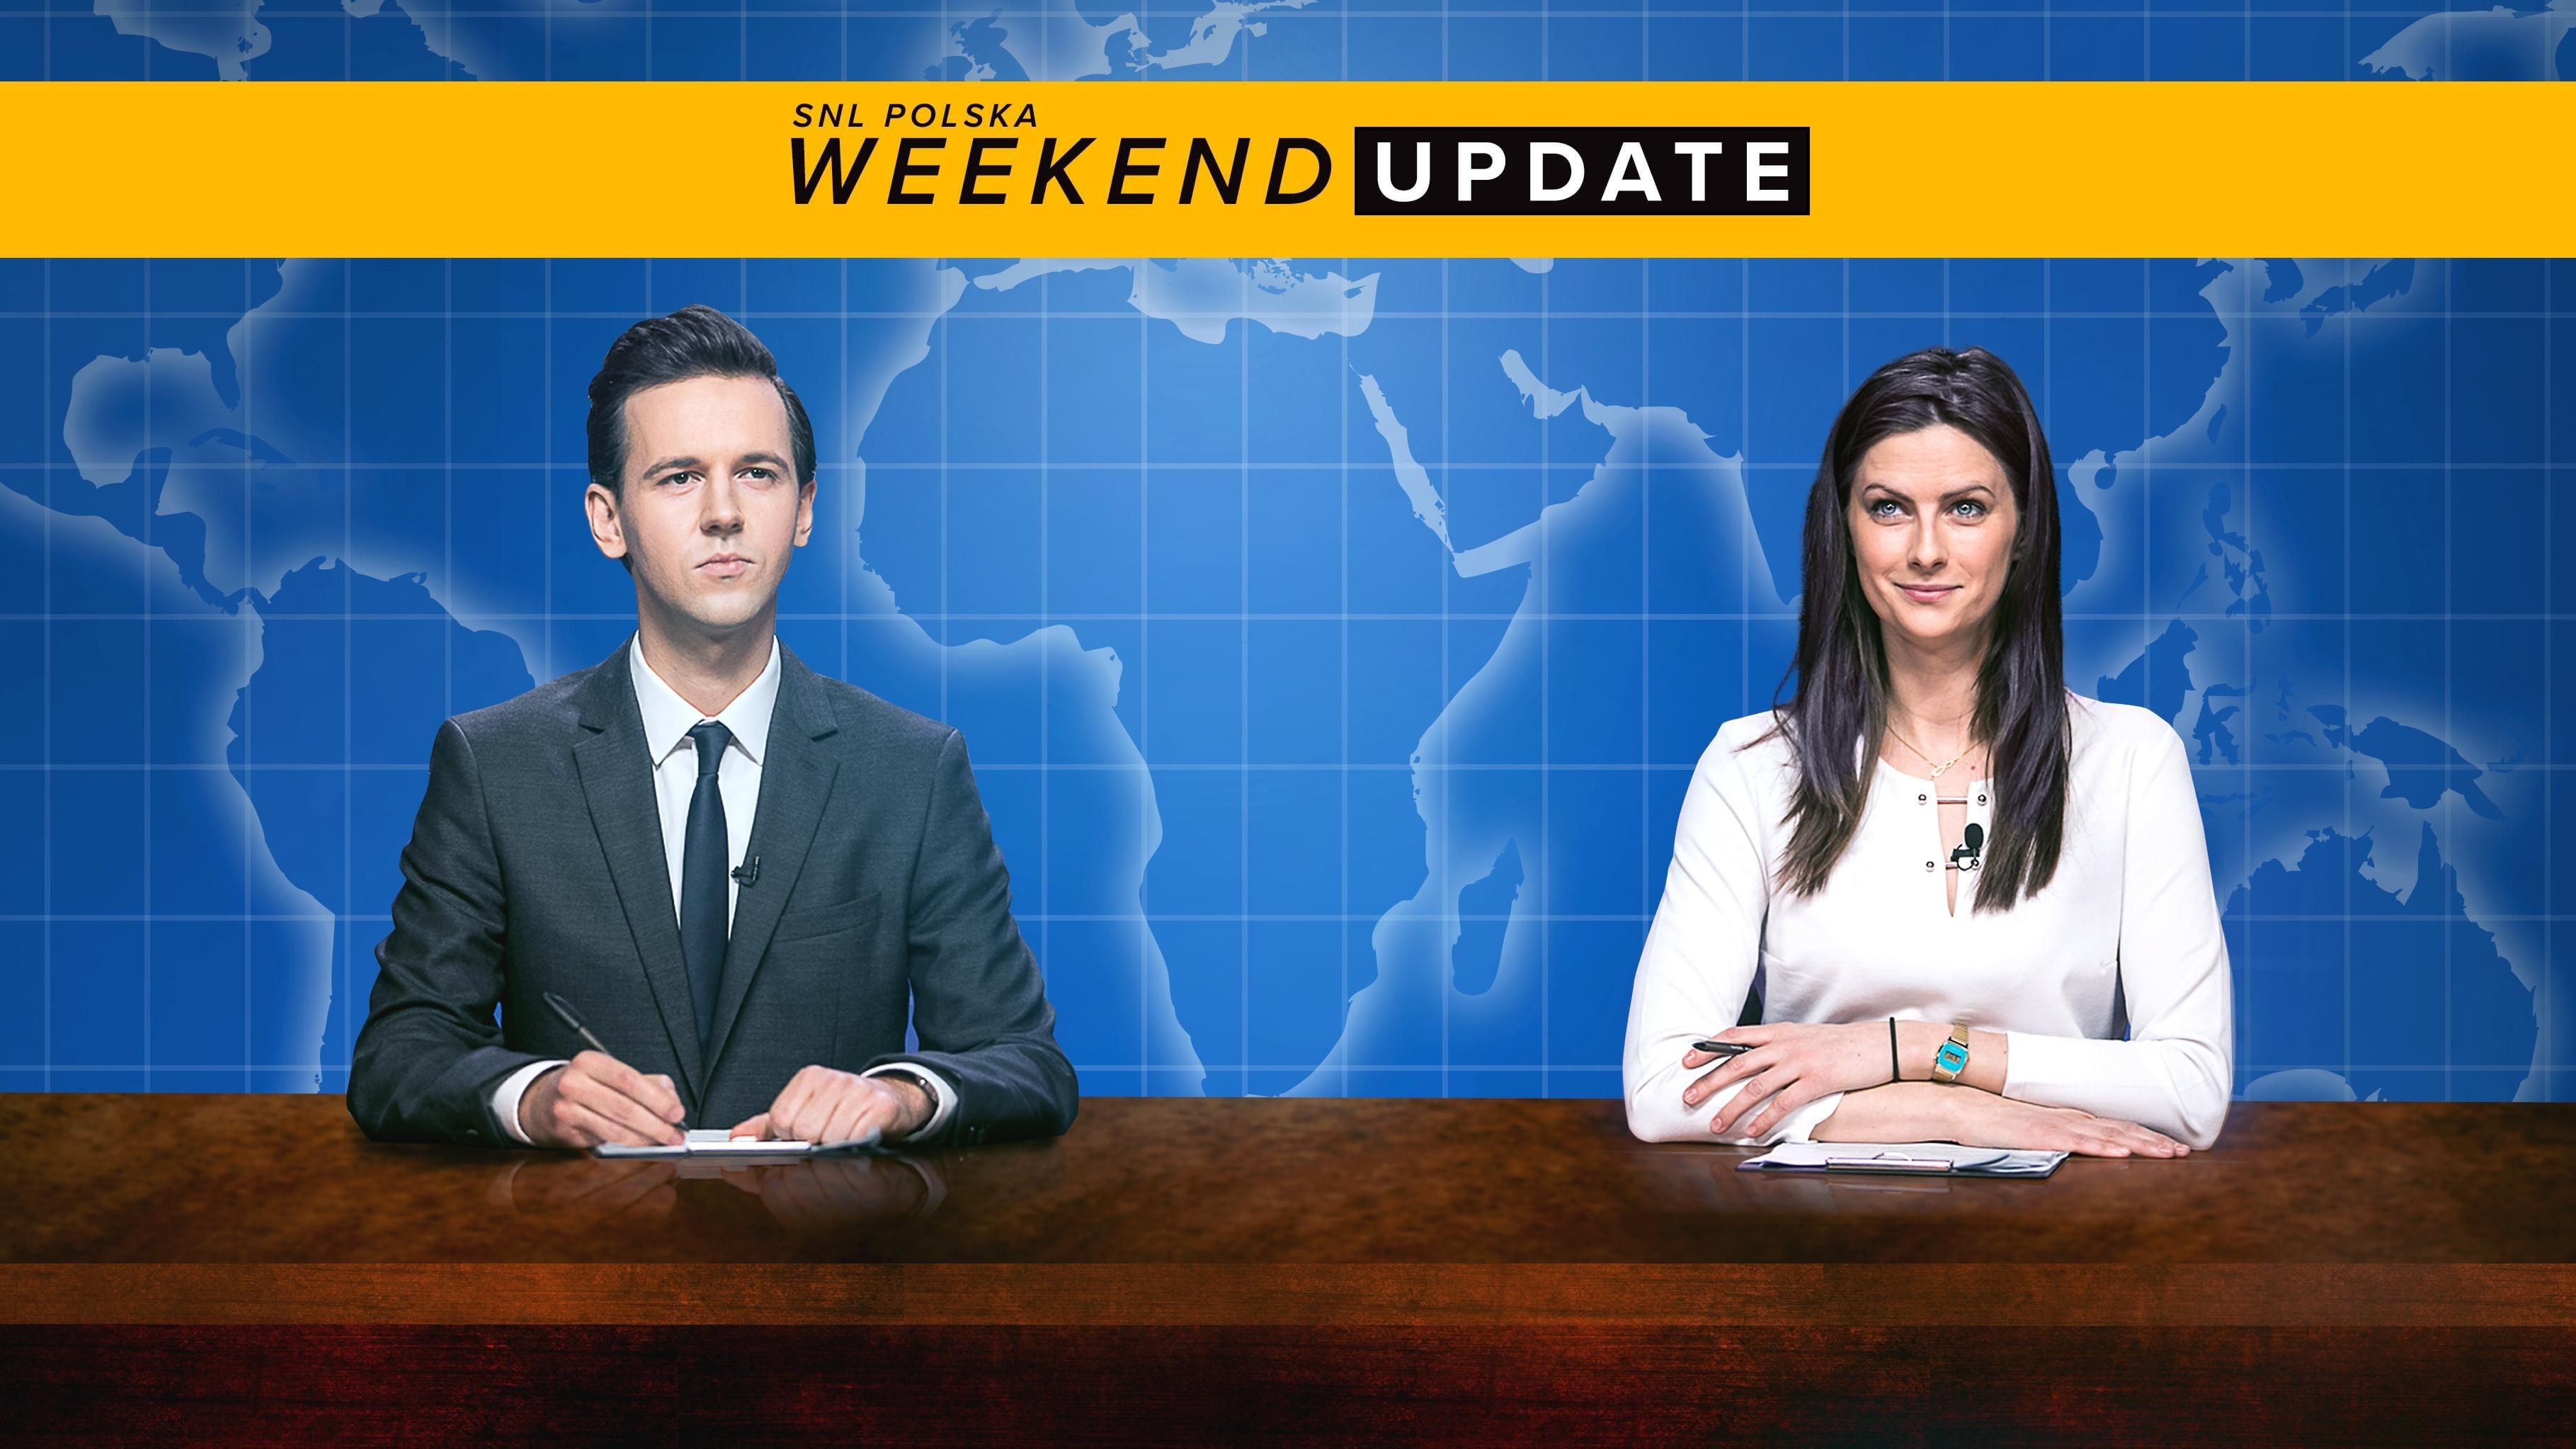 SNL Polska: Weekend Update backdrop